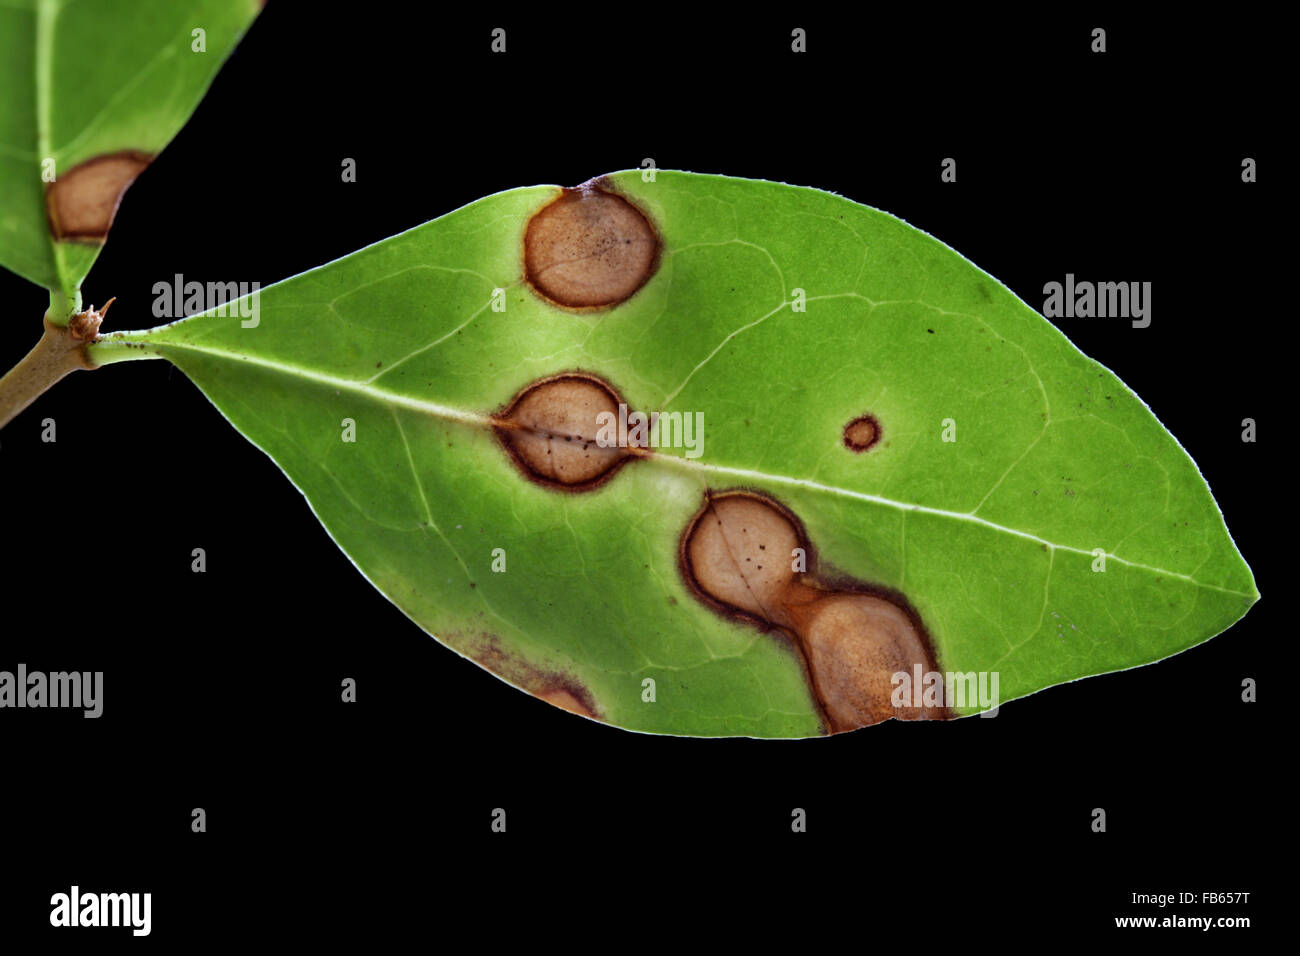 Nekrotischen Blattflecken auf einem Liguster (Ligustrum) Blatt, wahrscheinlich verursacht durch Cercospora SP. Pilz. Stockfoto